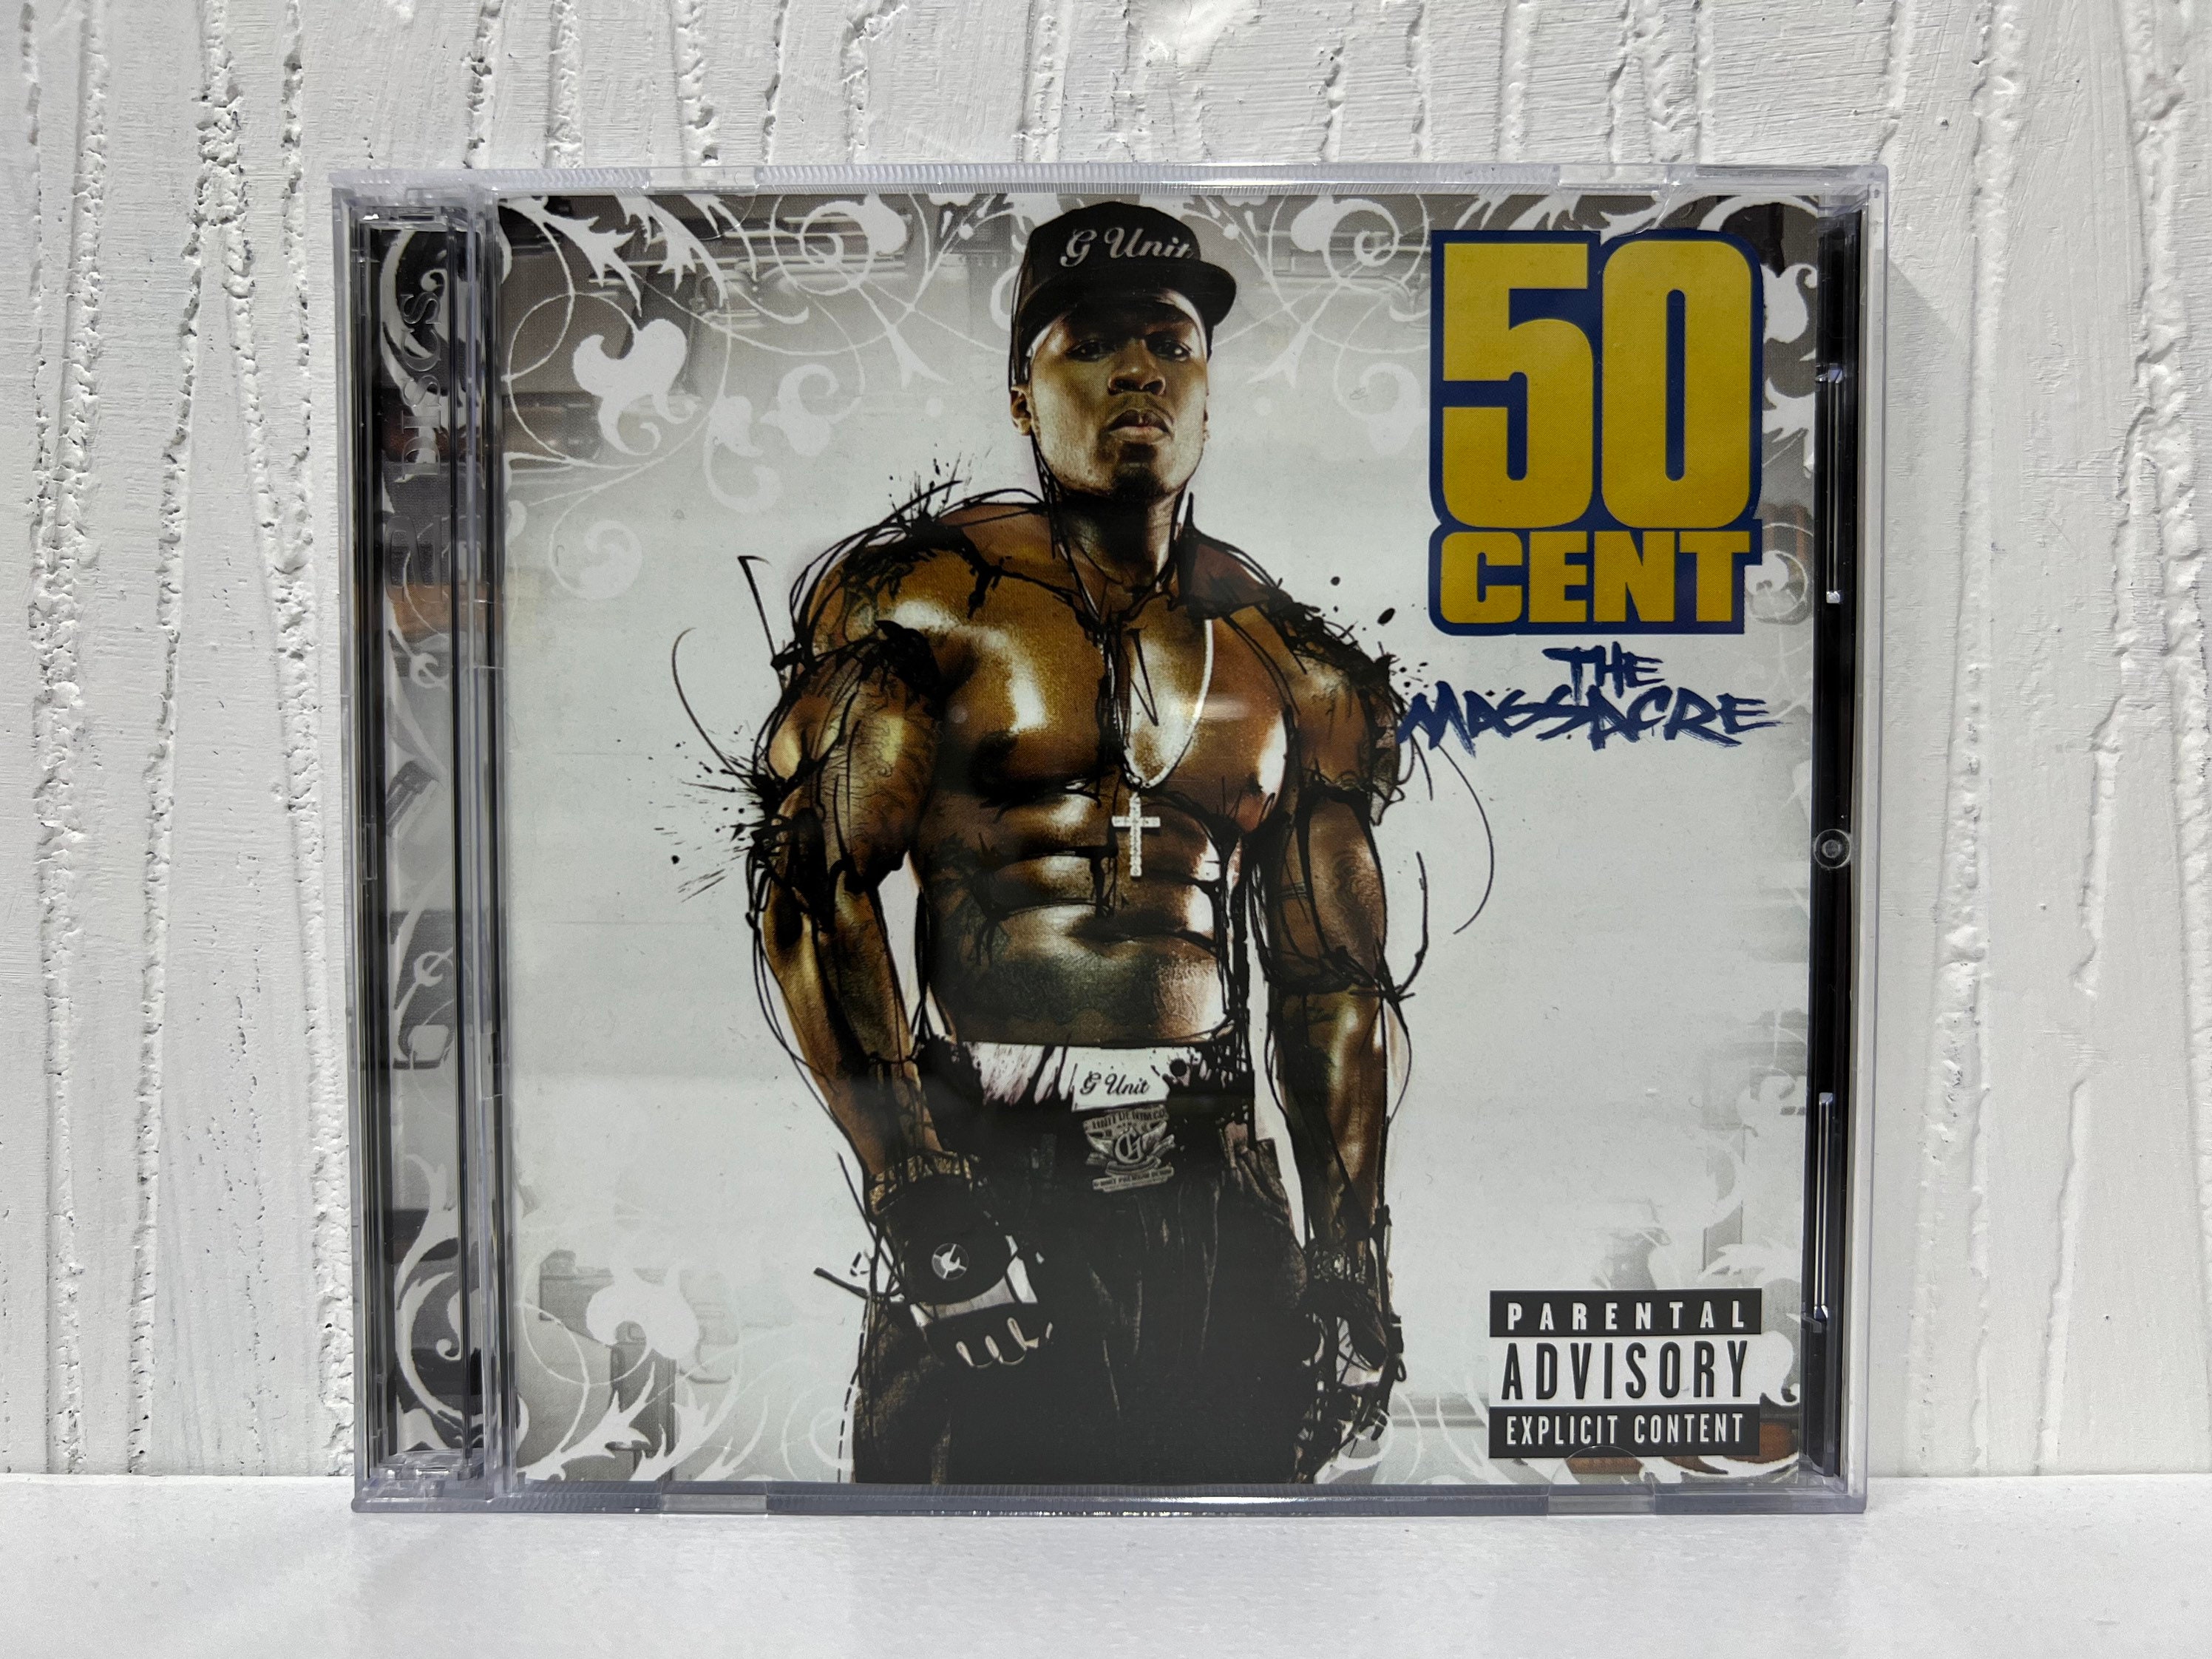 50 cent album